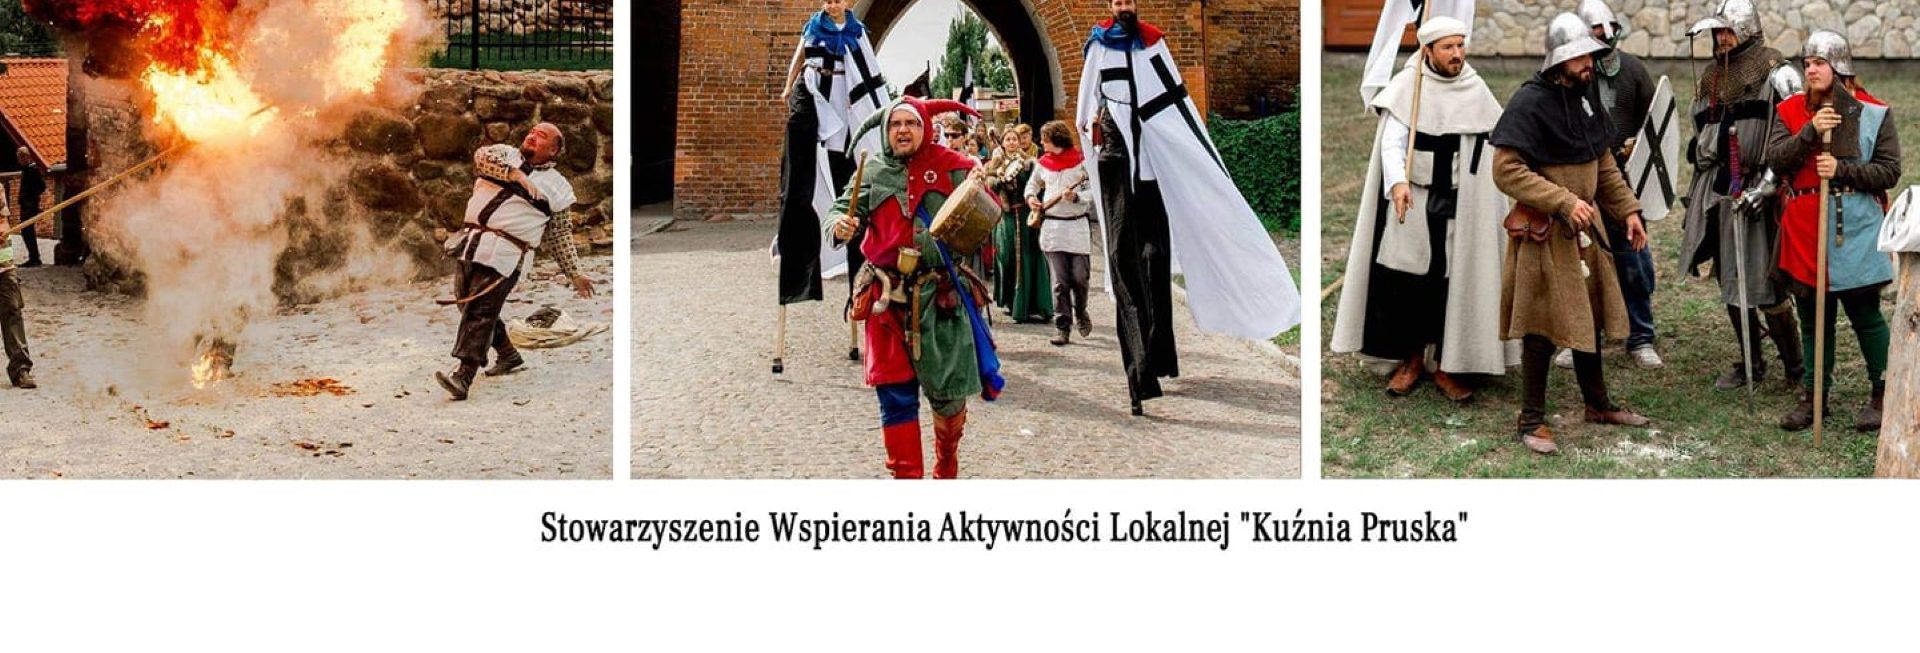 Plakat graficzny zapraszający do Pasłęka na cykliczną imprezę Jarmark św. Bartłomieja - Pasłęk 2021. Na plakacie trzy zdjęcia przedstawiające rycerzy w strojach średniowiecznych jadących na koniach na tle bramy zamku oraz rycerza podczas prezentacji "ognia". 